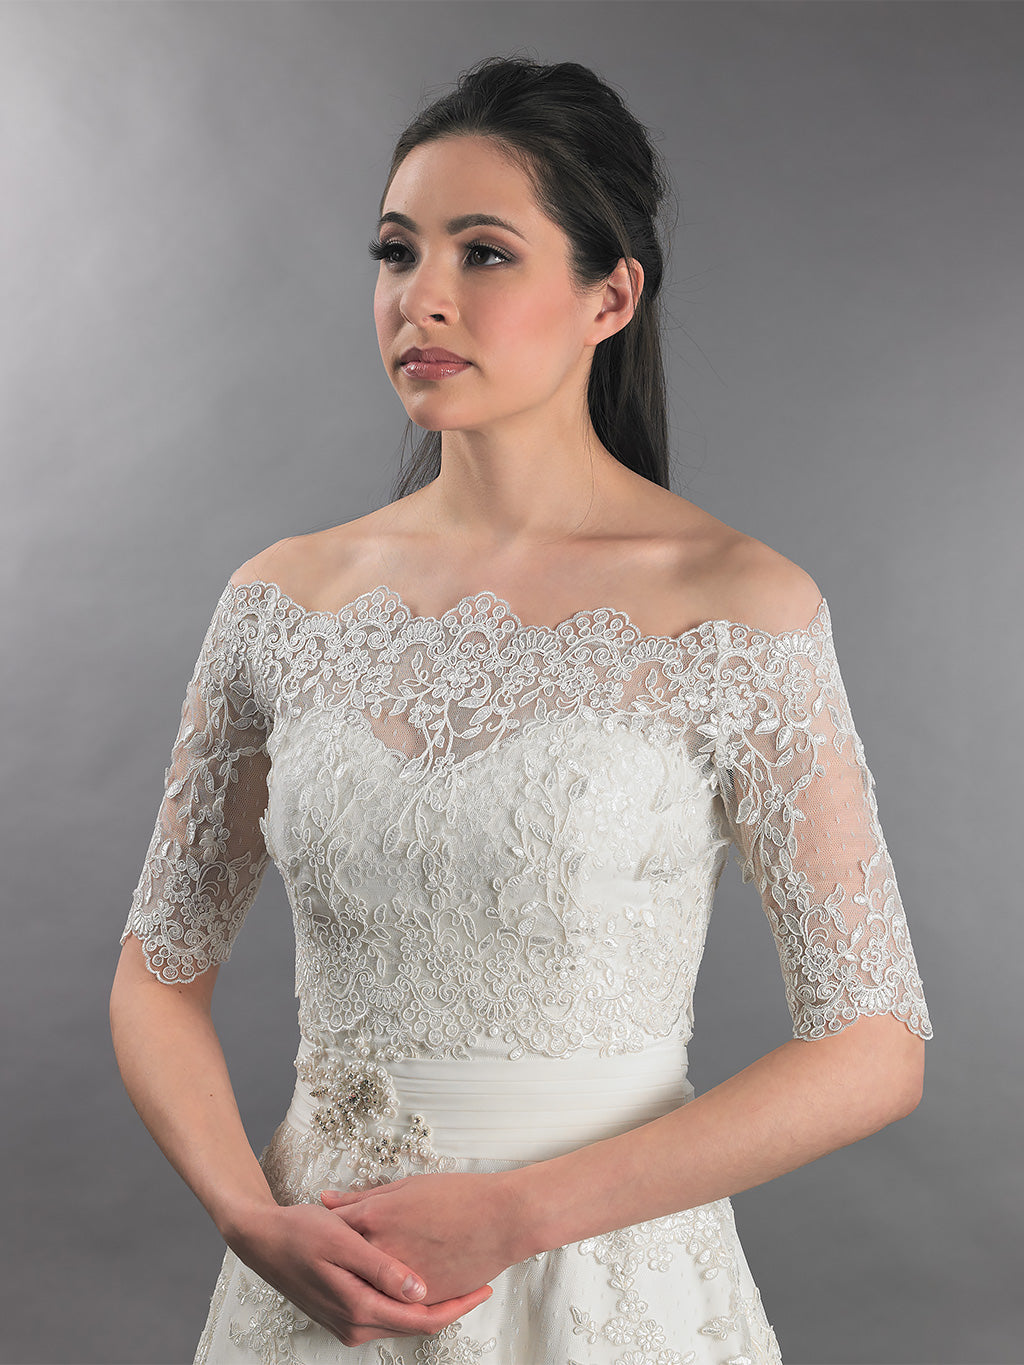 Bridal Jackets Lace Off Shoulder Wedding Boleros Wraps White Ivory Elegant Shrug 